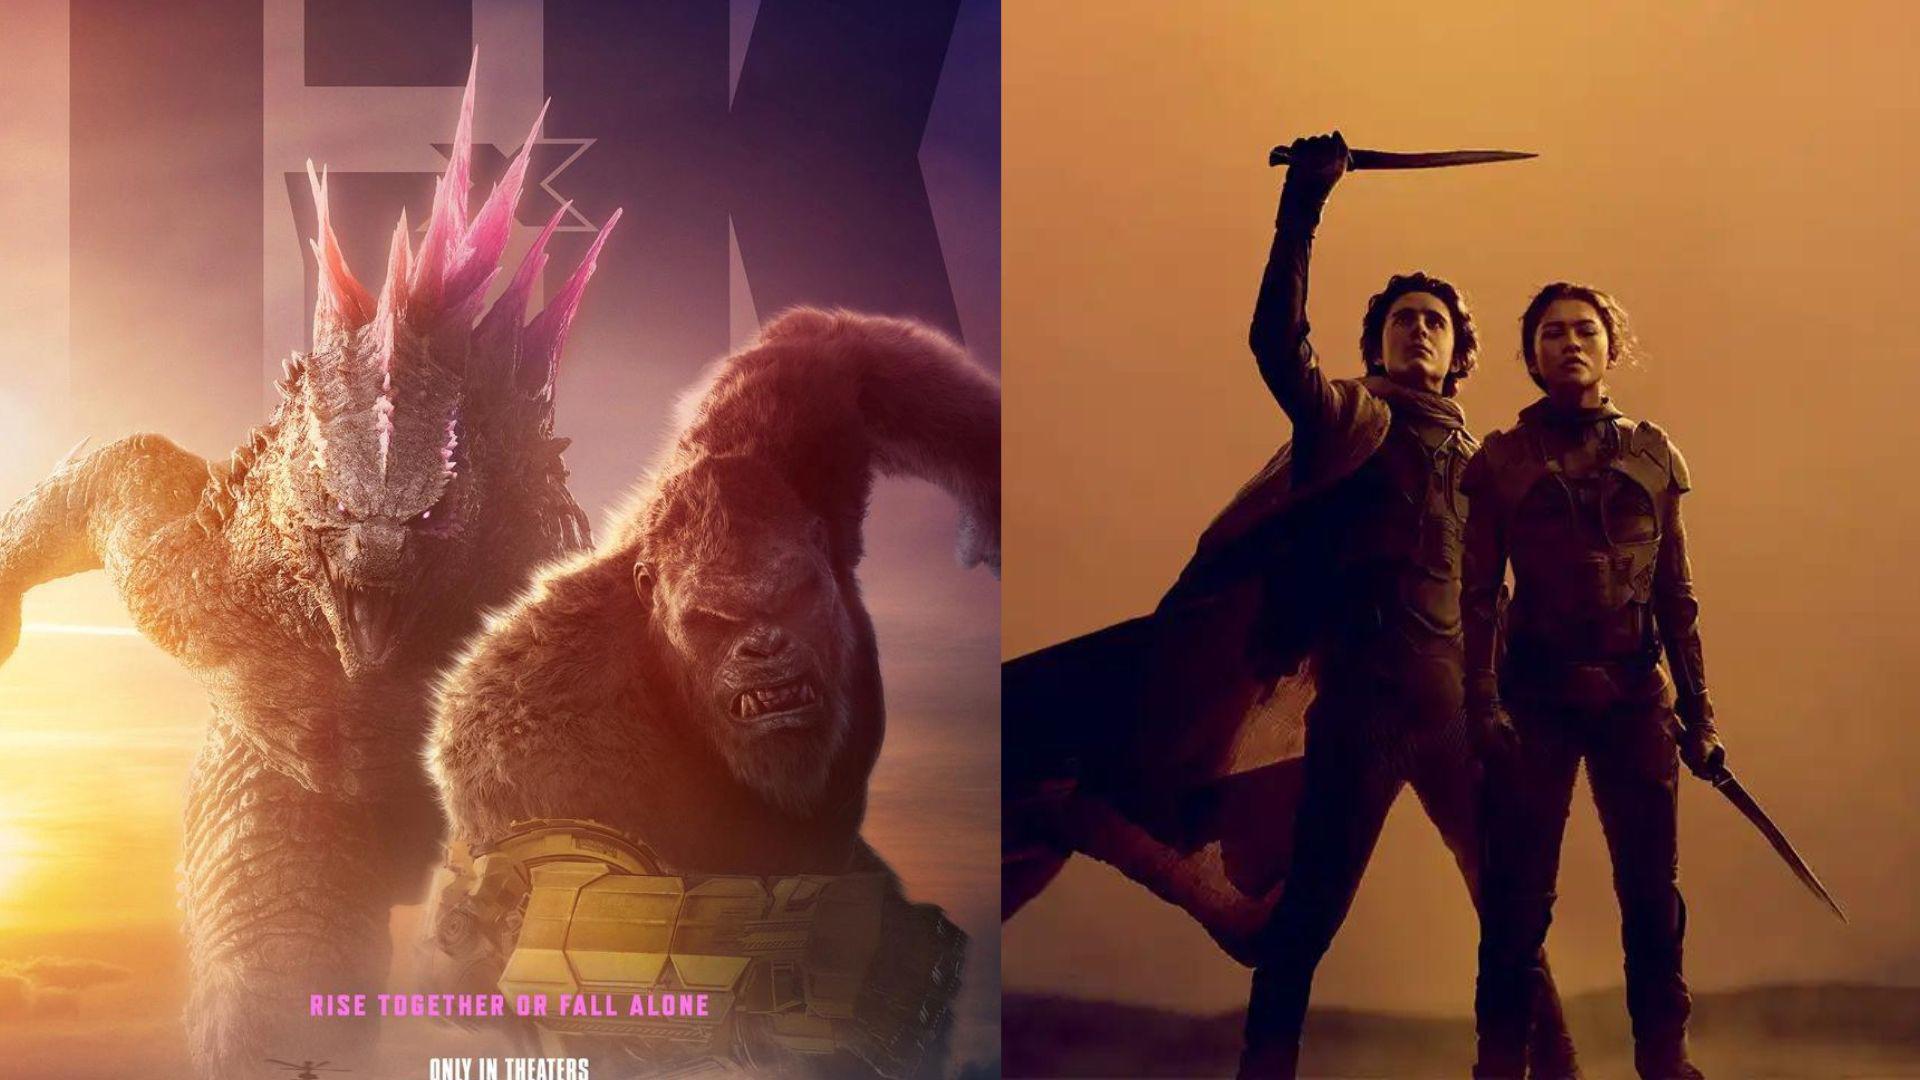 ¡Se apoderan del cine! Warner Bros. conquista la taquilla con ‘Godzilla x Kong’ y ‘Dune: parte 2’. Noticias en tiempo real